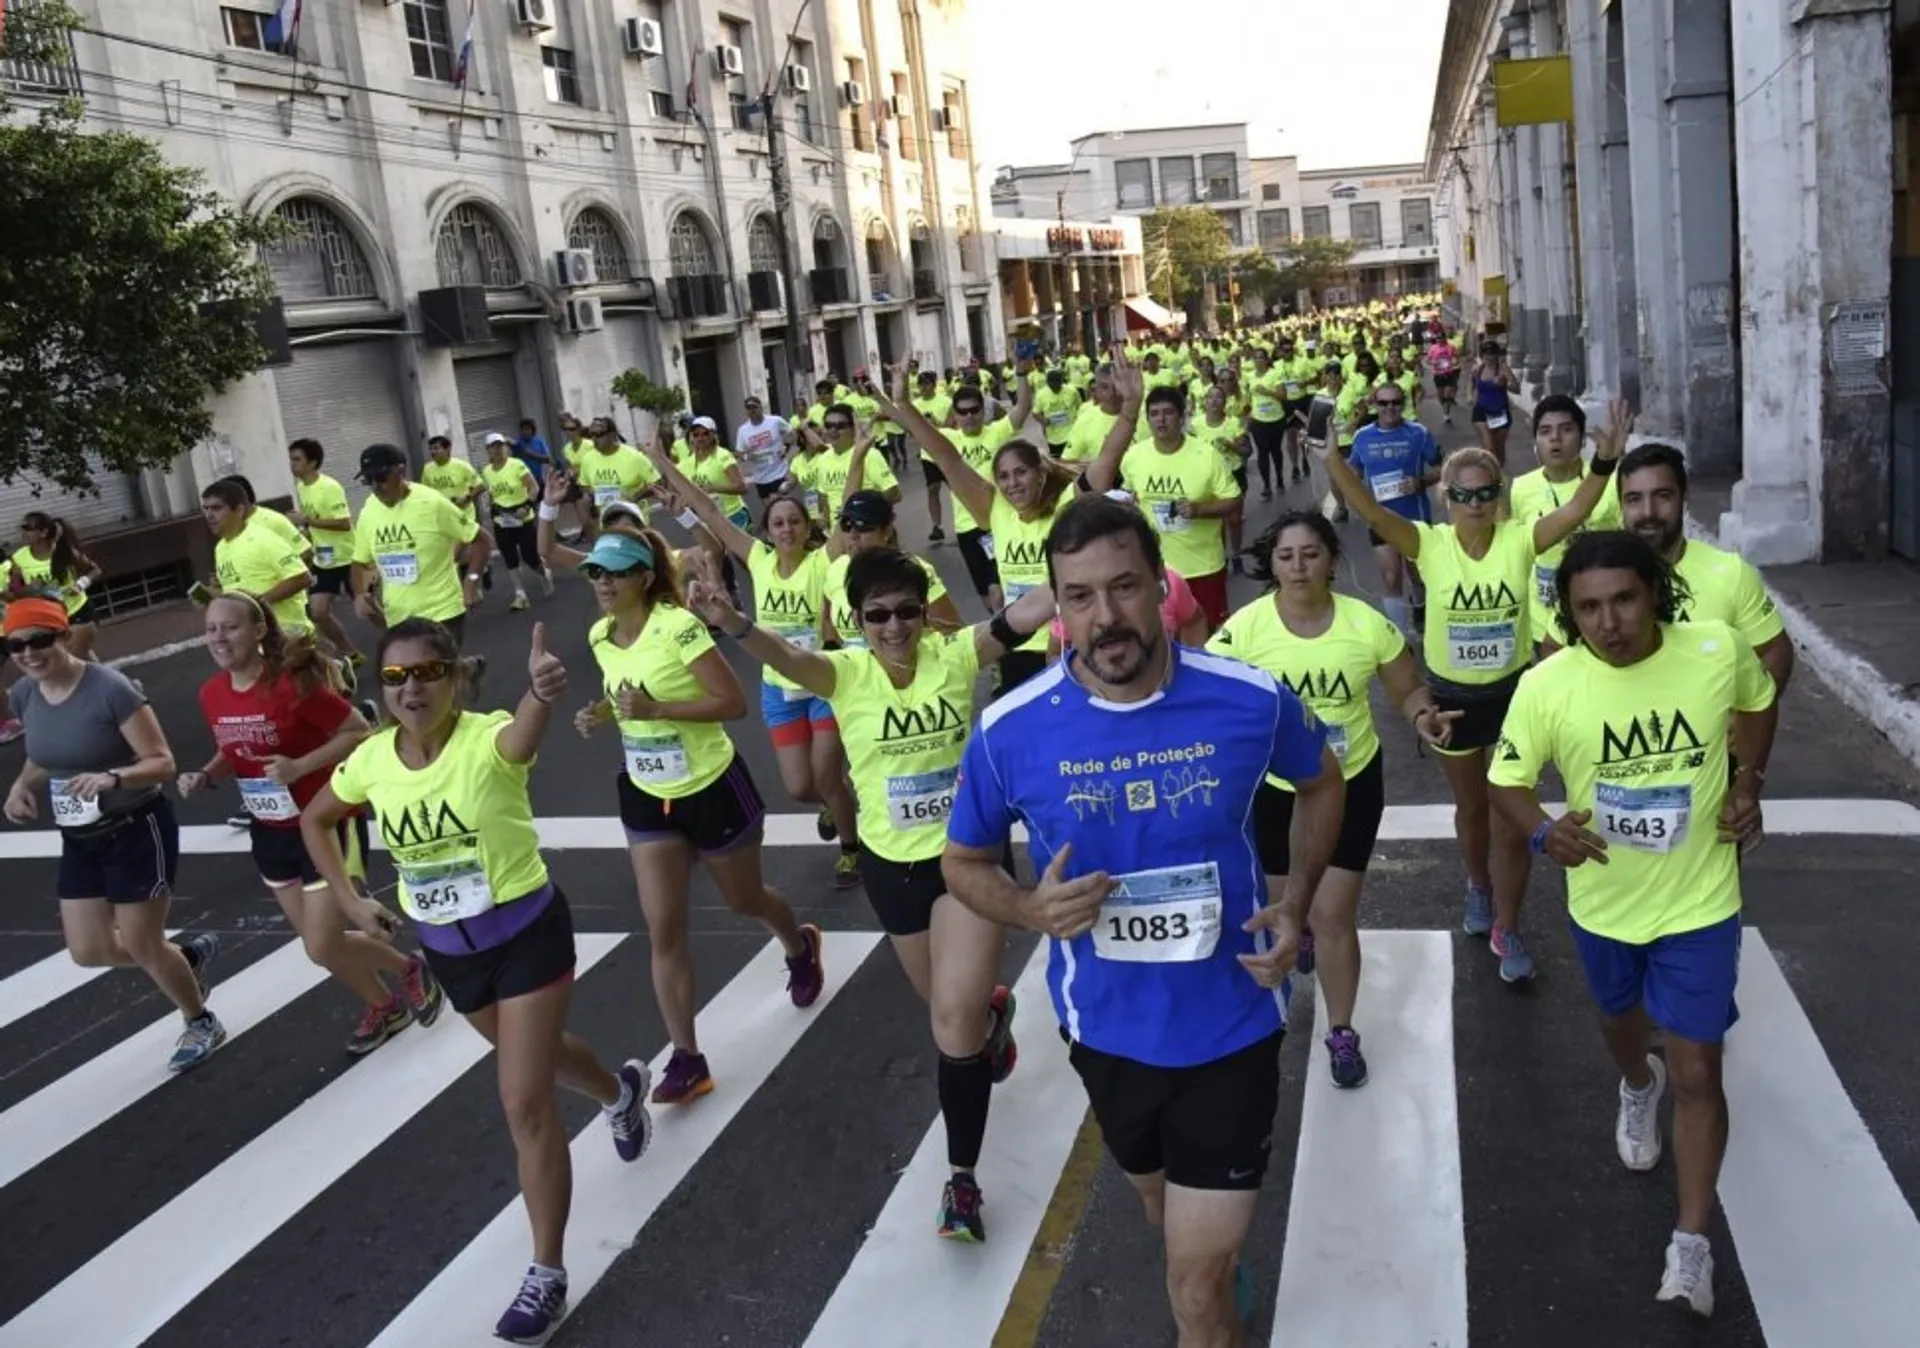 Maratón Internacional de Asunción